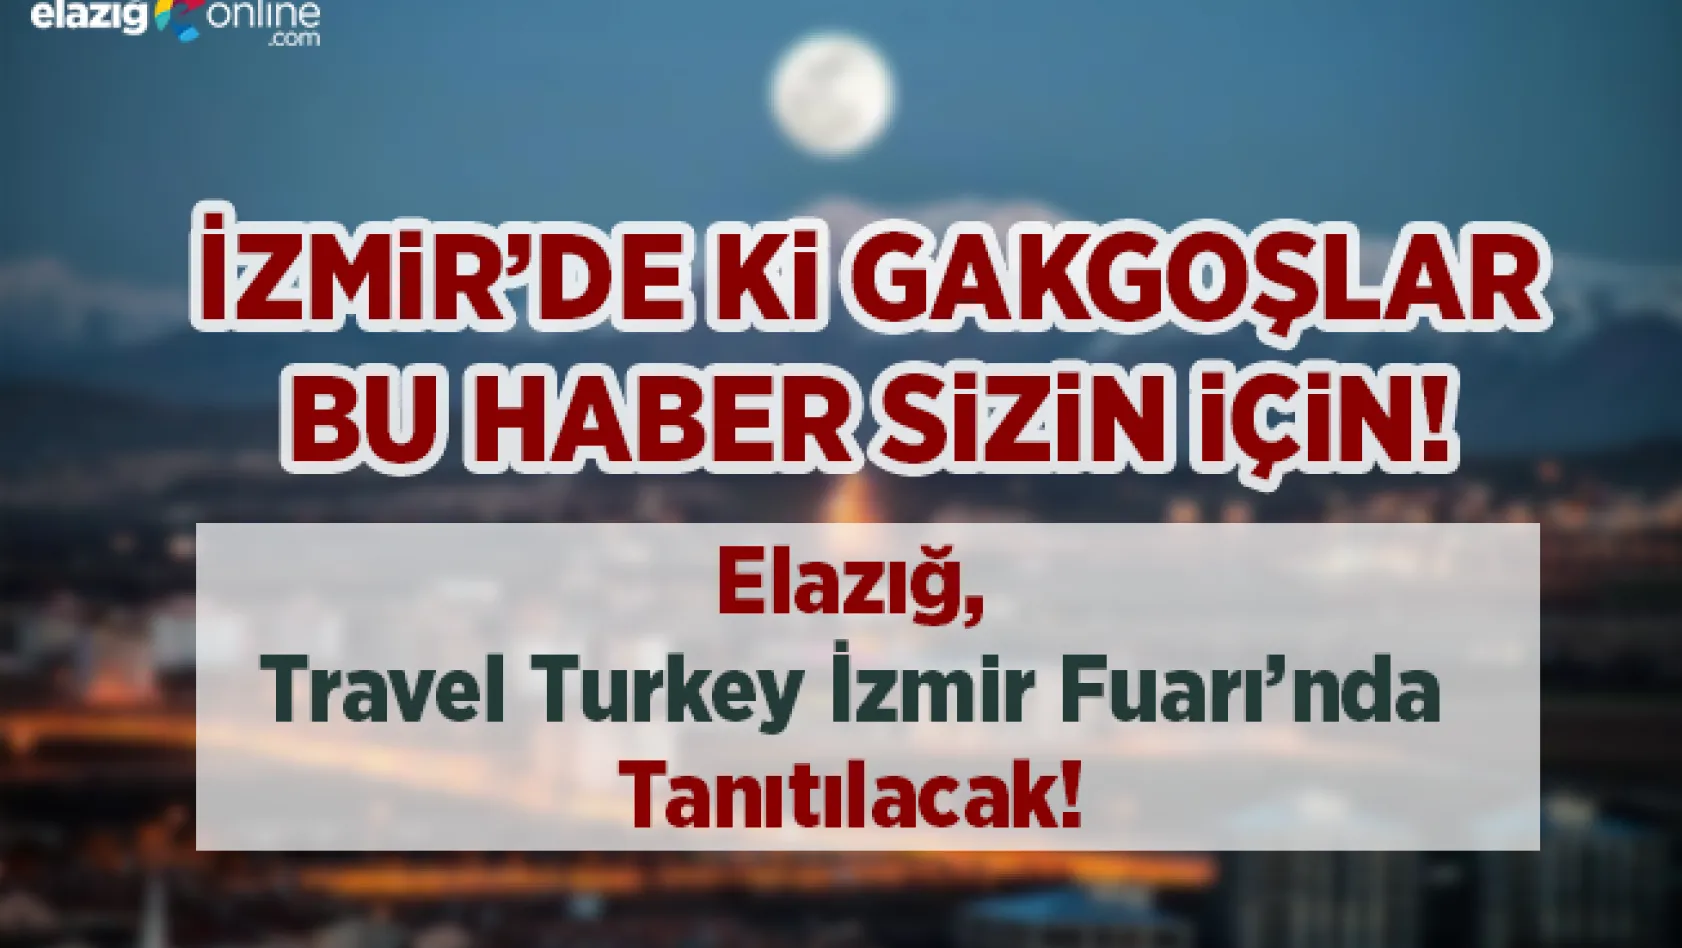 Elazığ İzmir'de Tanıtılacak